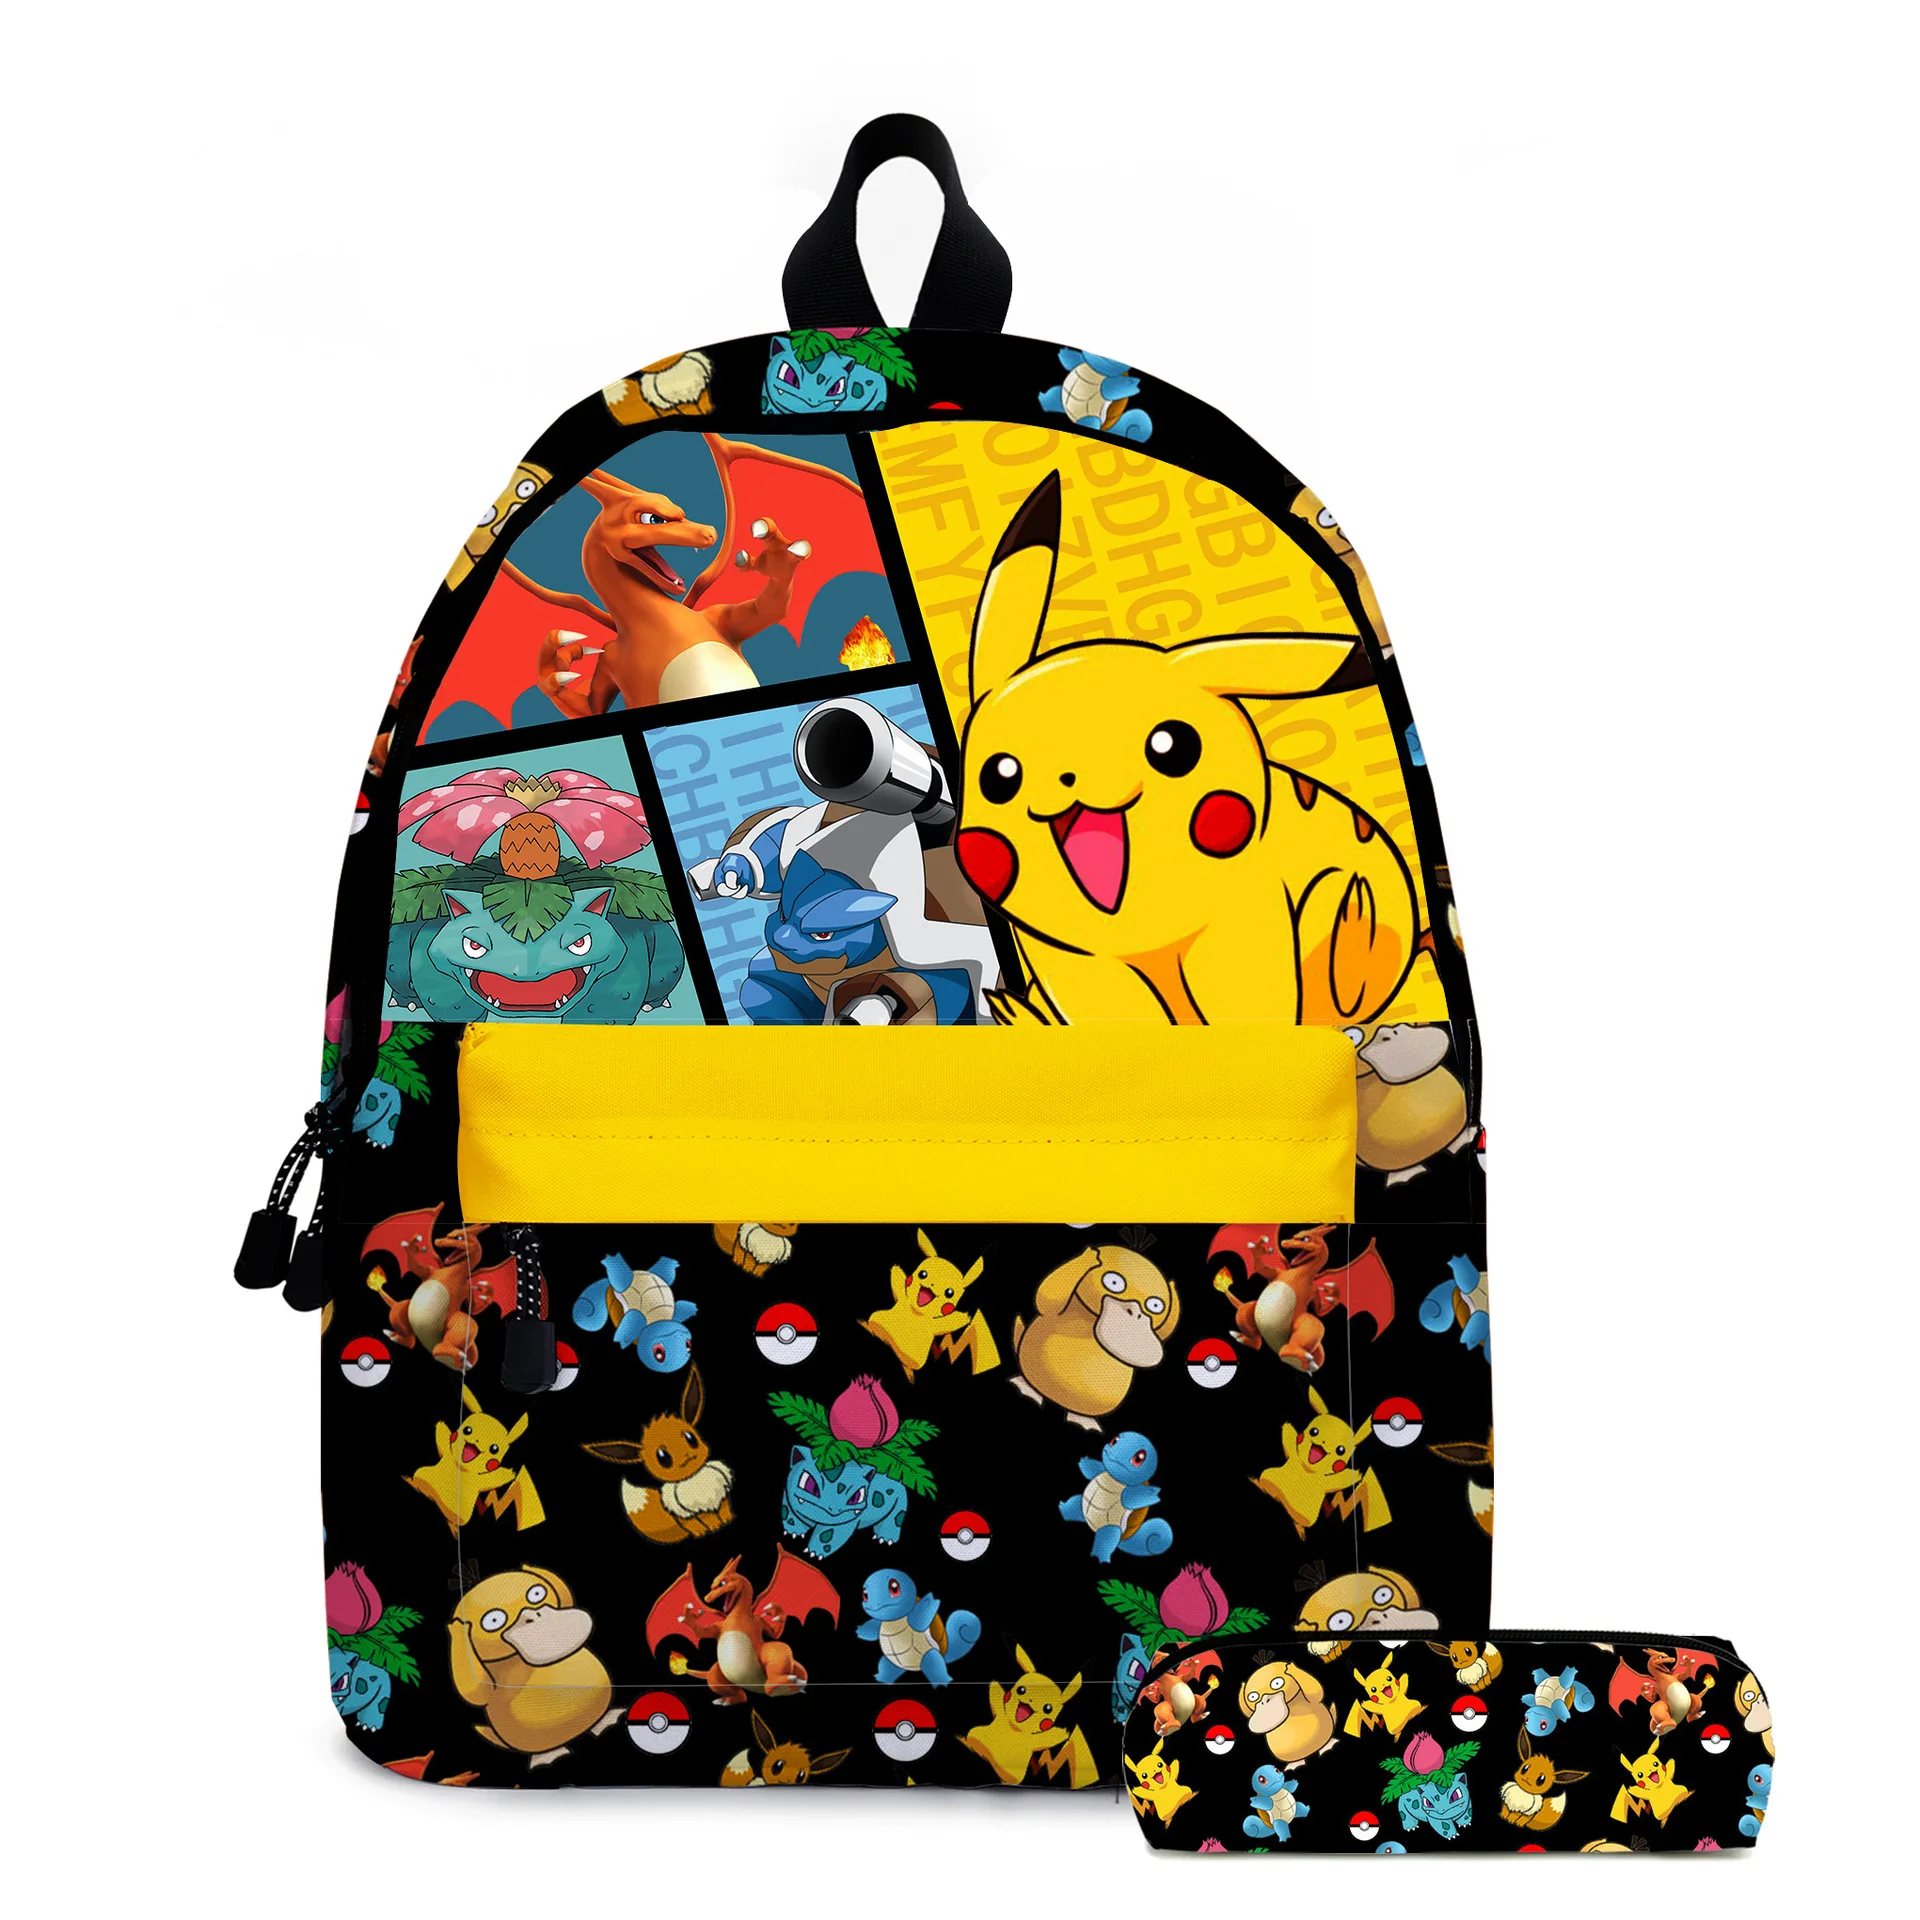 Новинка 2021 школьный рюкзак с покемоном сумка для хранения милый пенал Пикачу